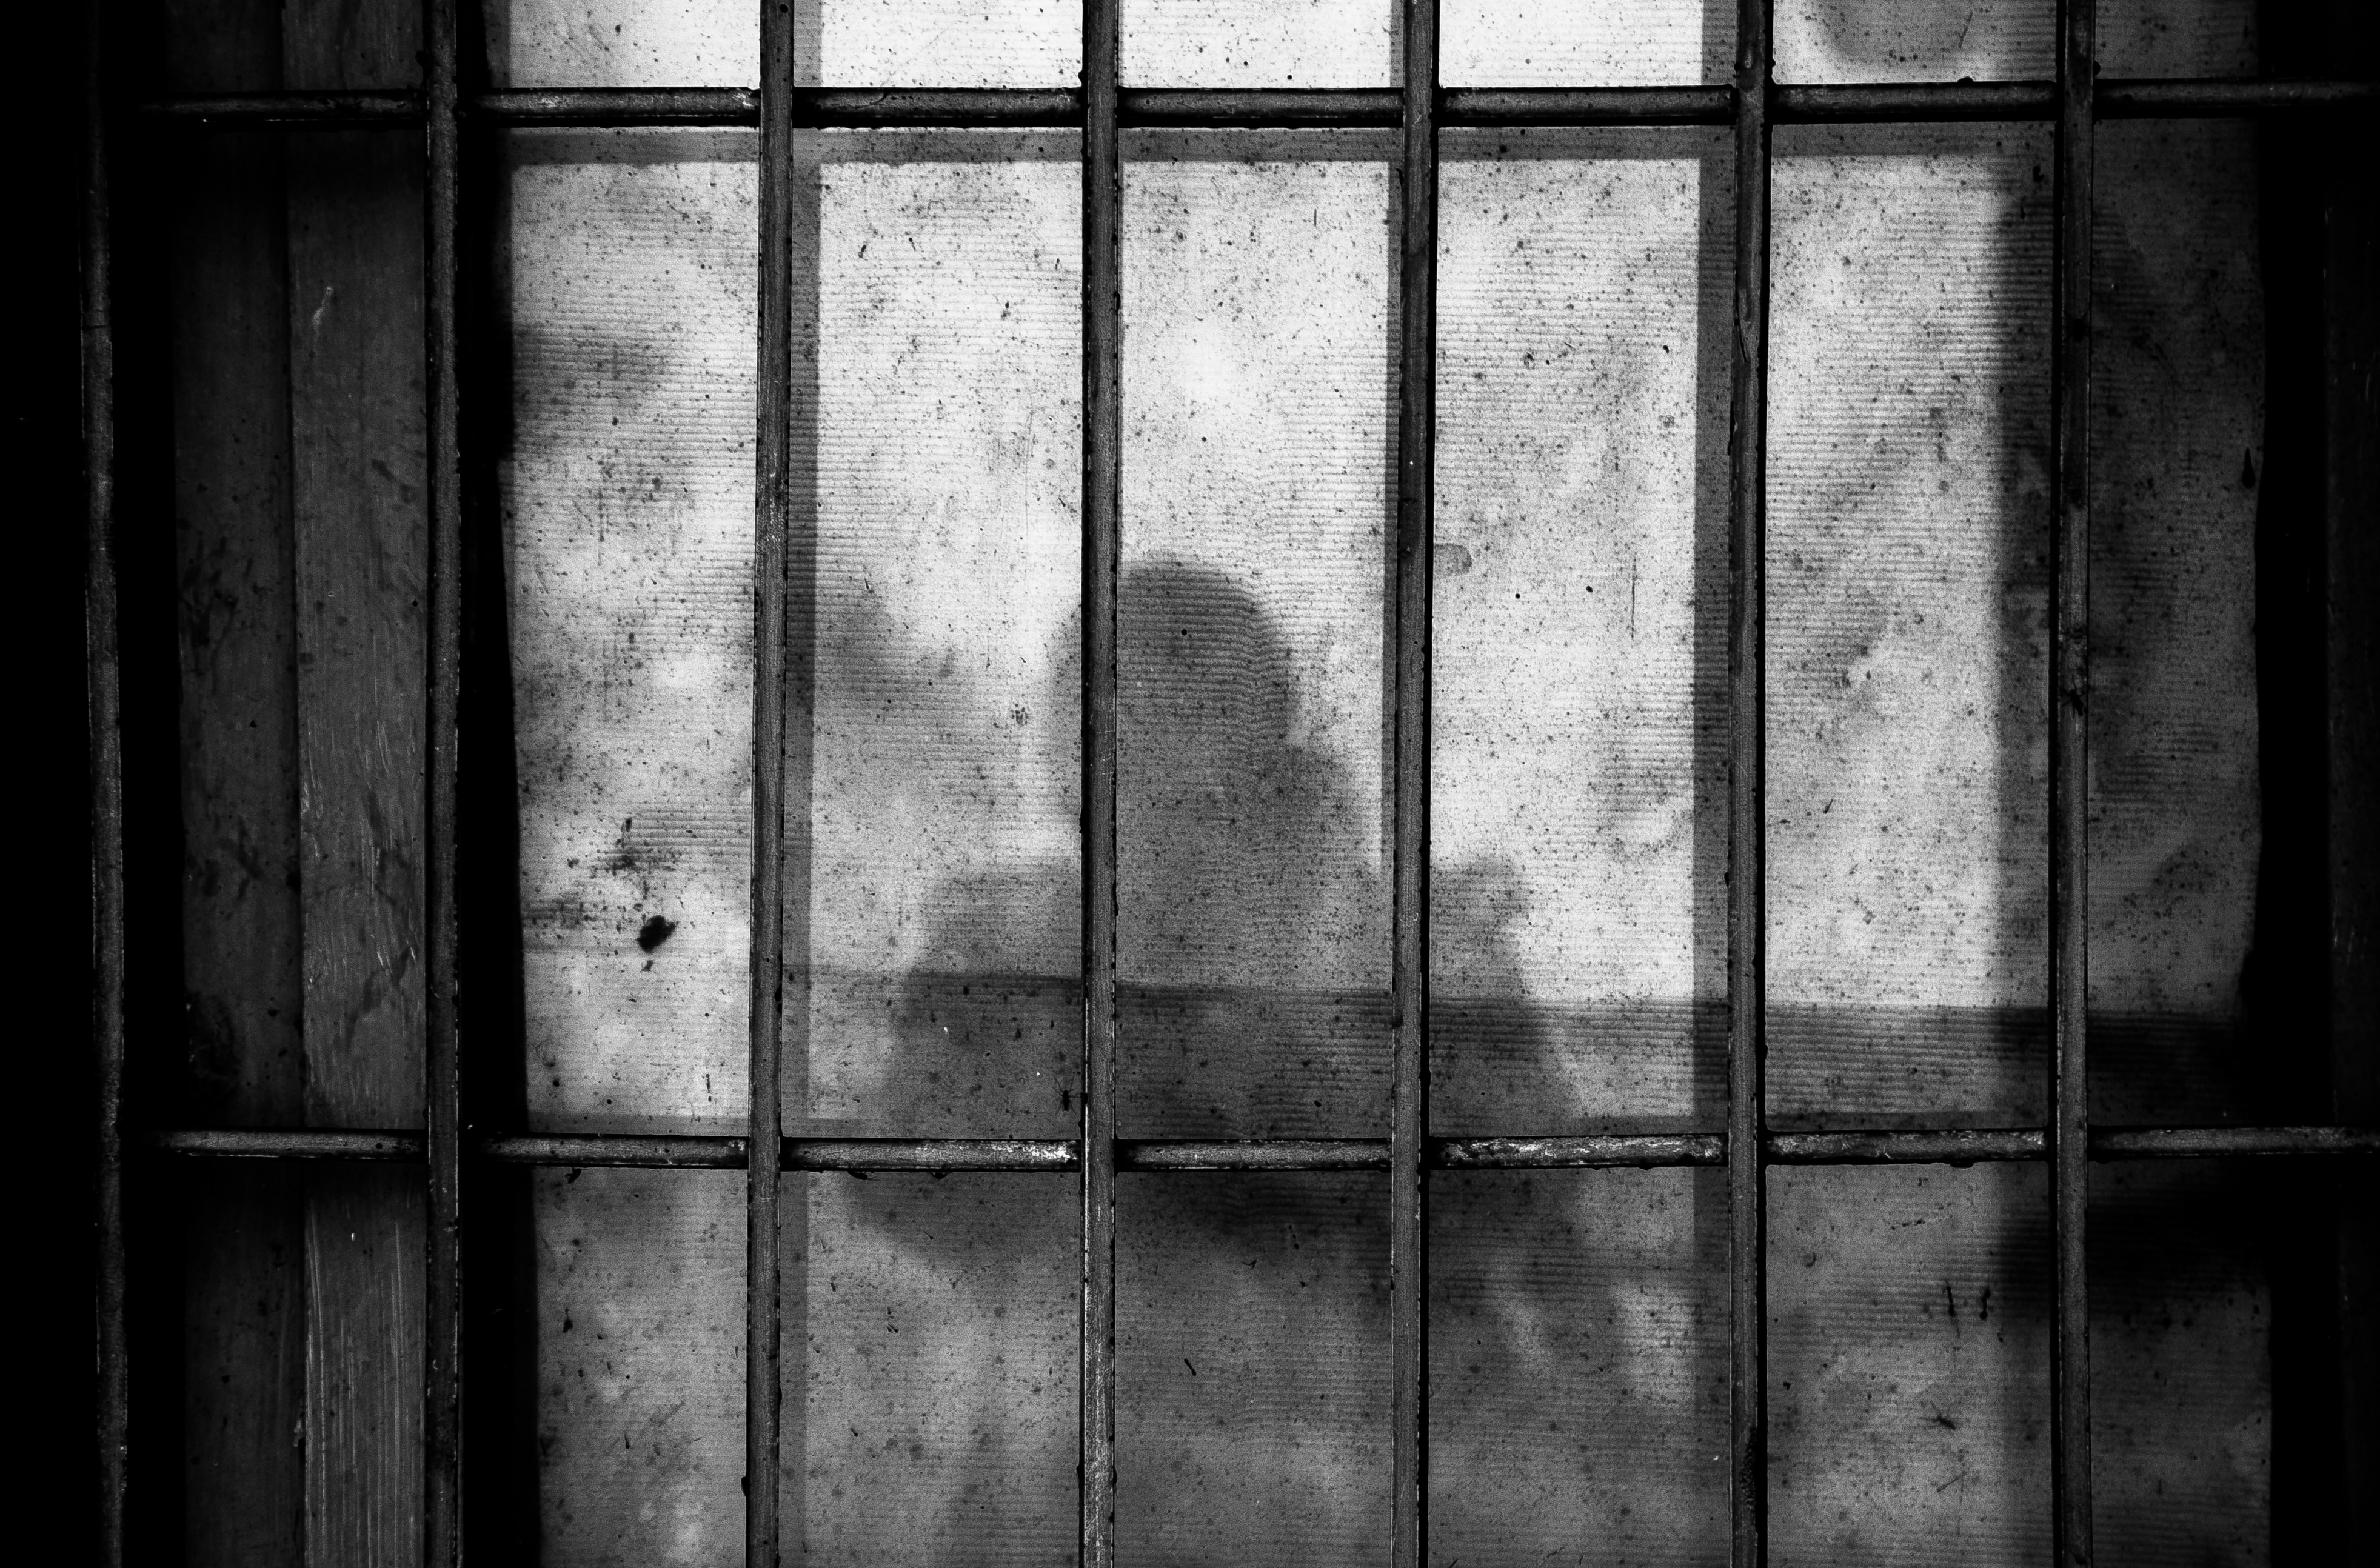 Une ombre en prison (photo)